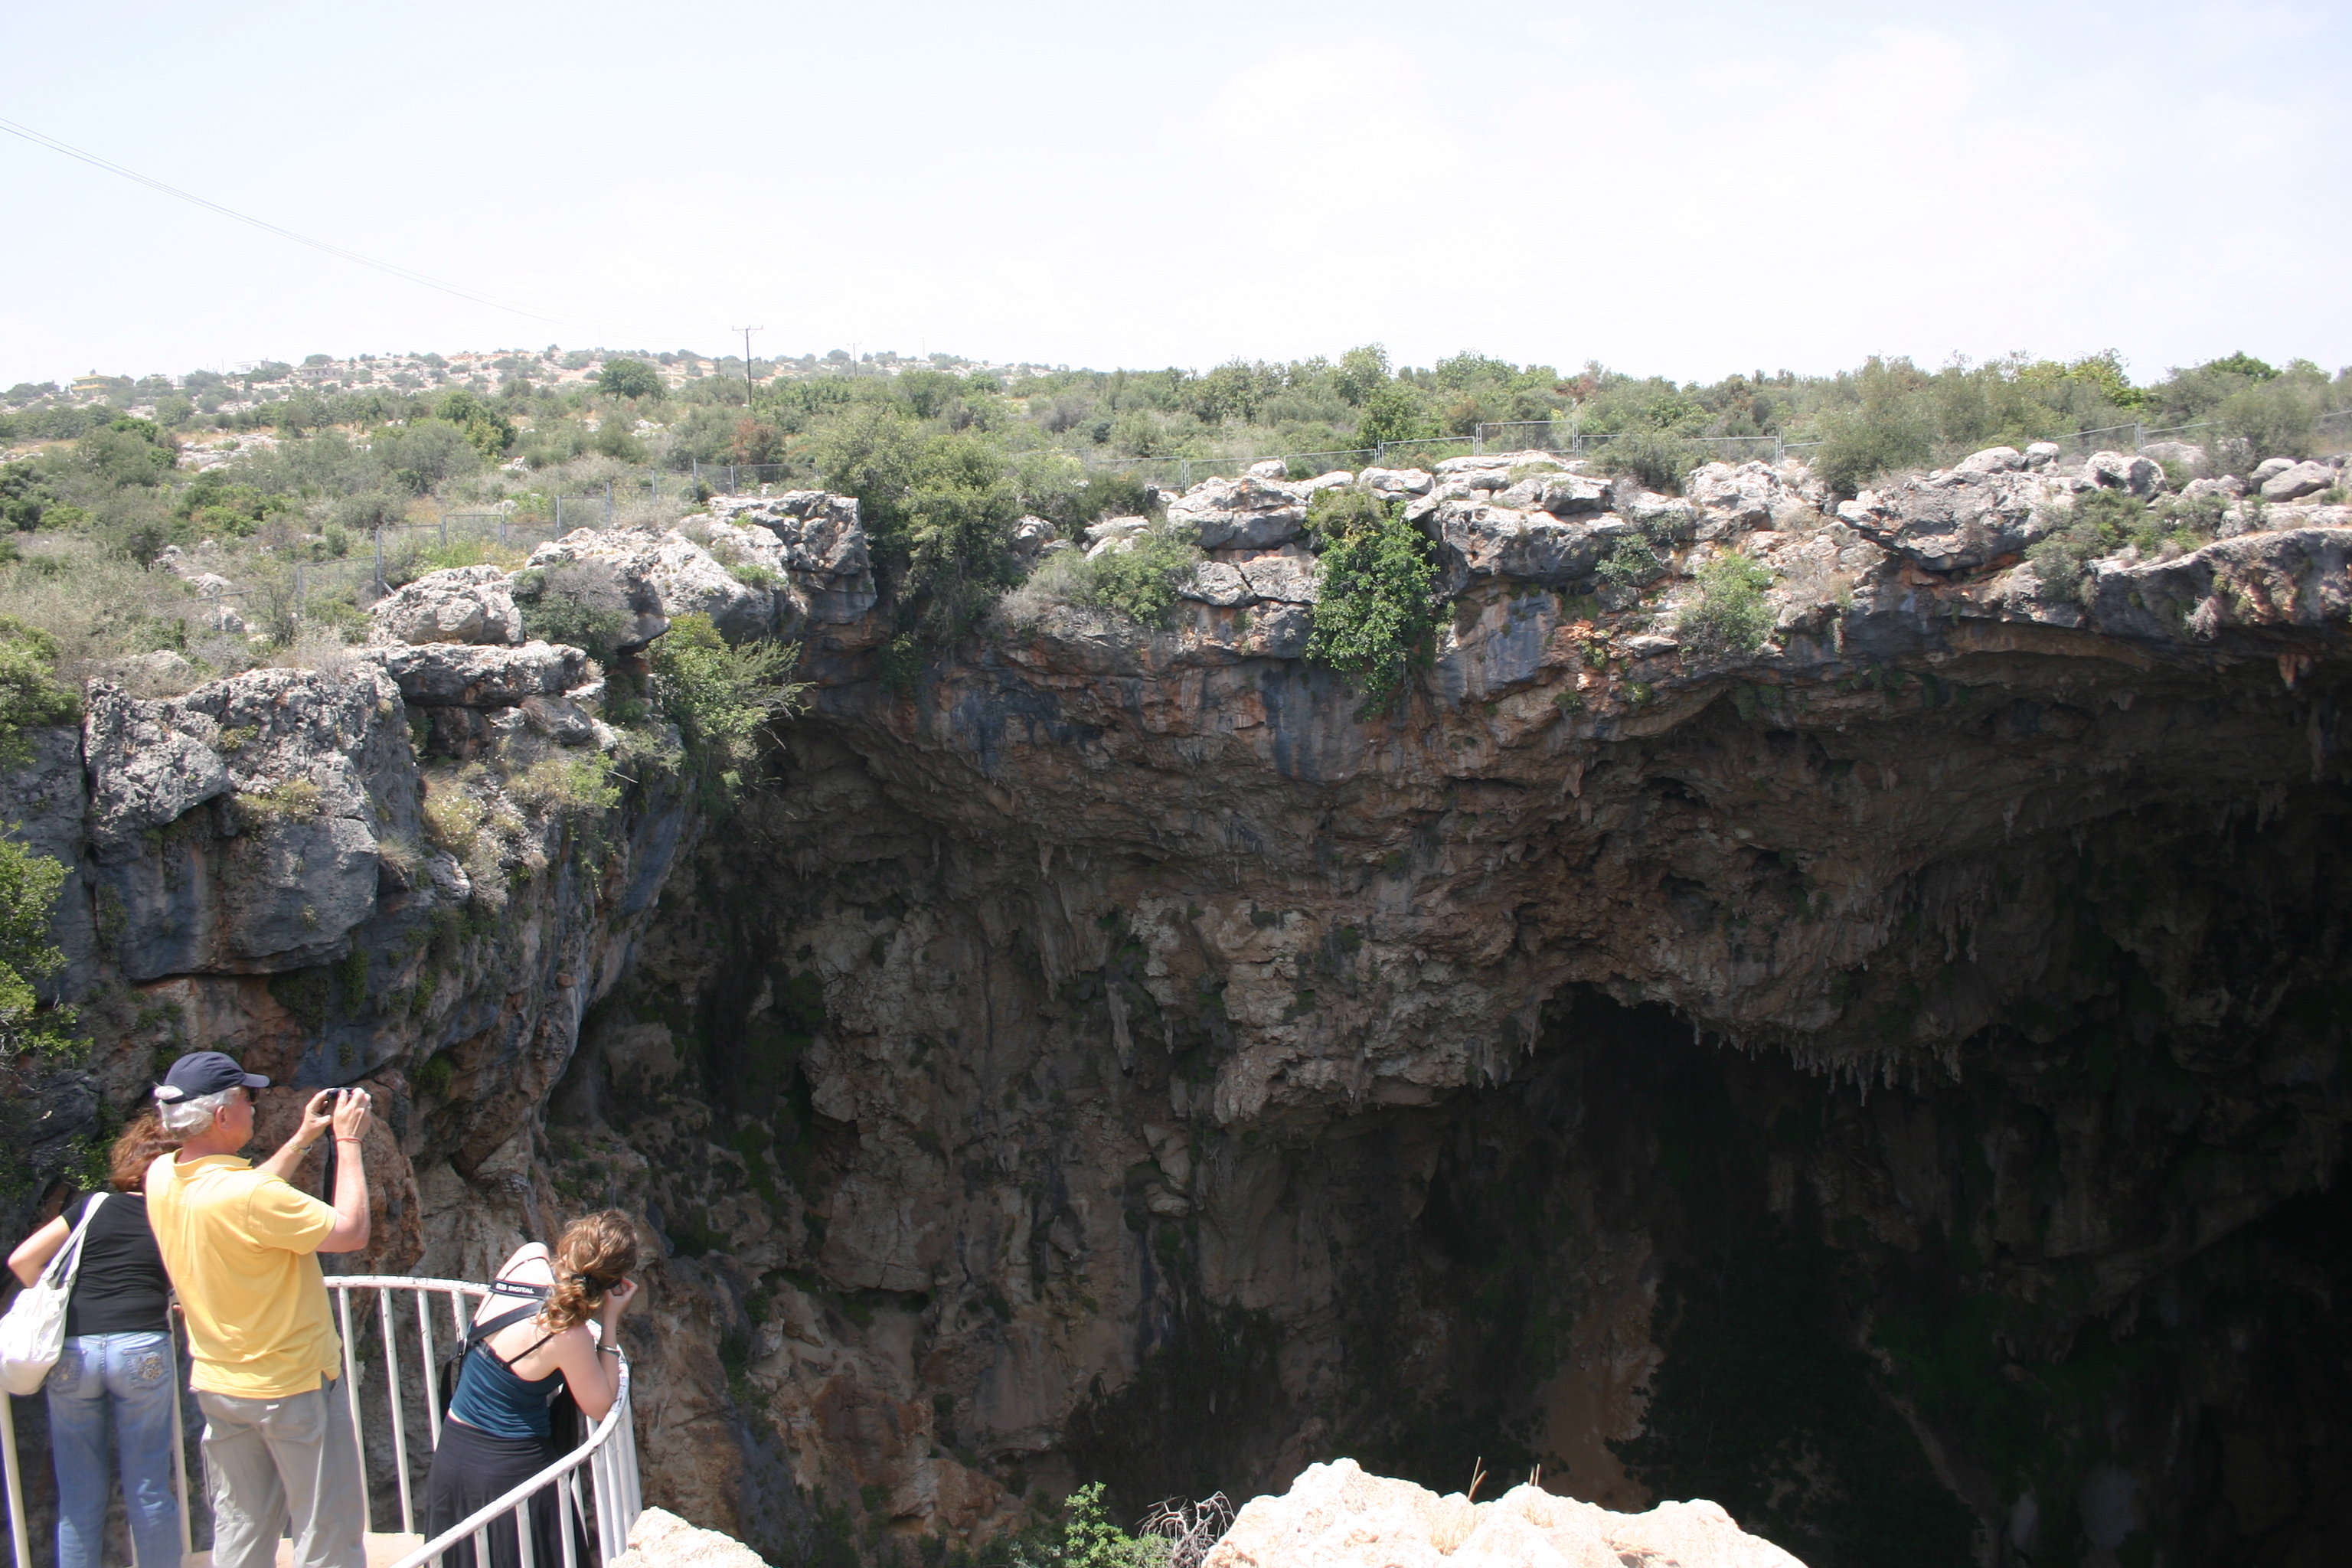 Korykischen Grotten: Korykischen Grotten, Sehenswürdikeit aus Karbonatgestein ist 128 Meter tief, der Durchmesser der kupferroten, schwarz gesprenkelten Felsgrotte beträgt 50 Meter